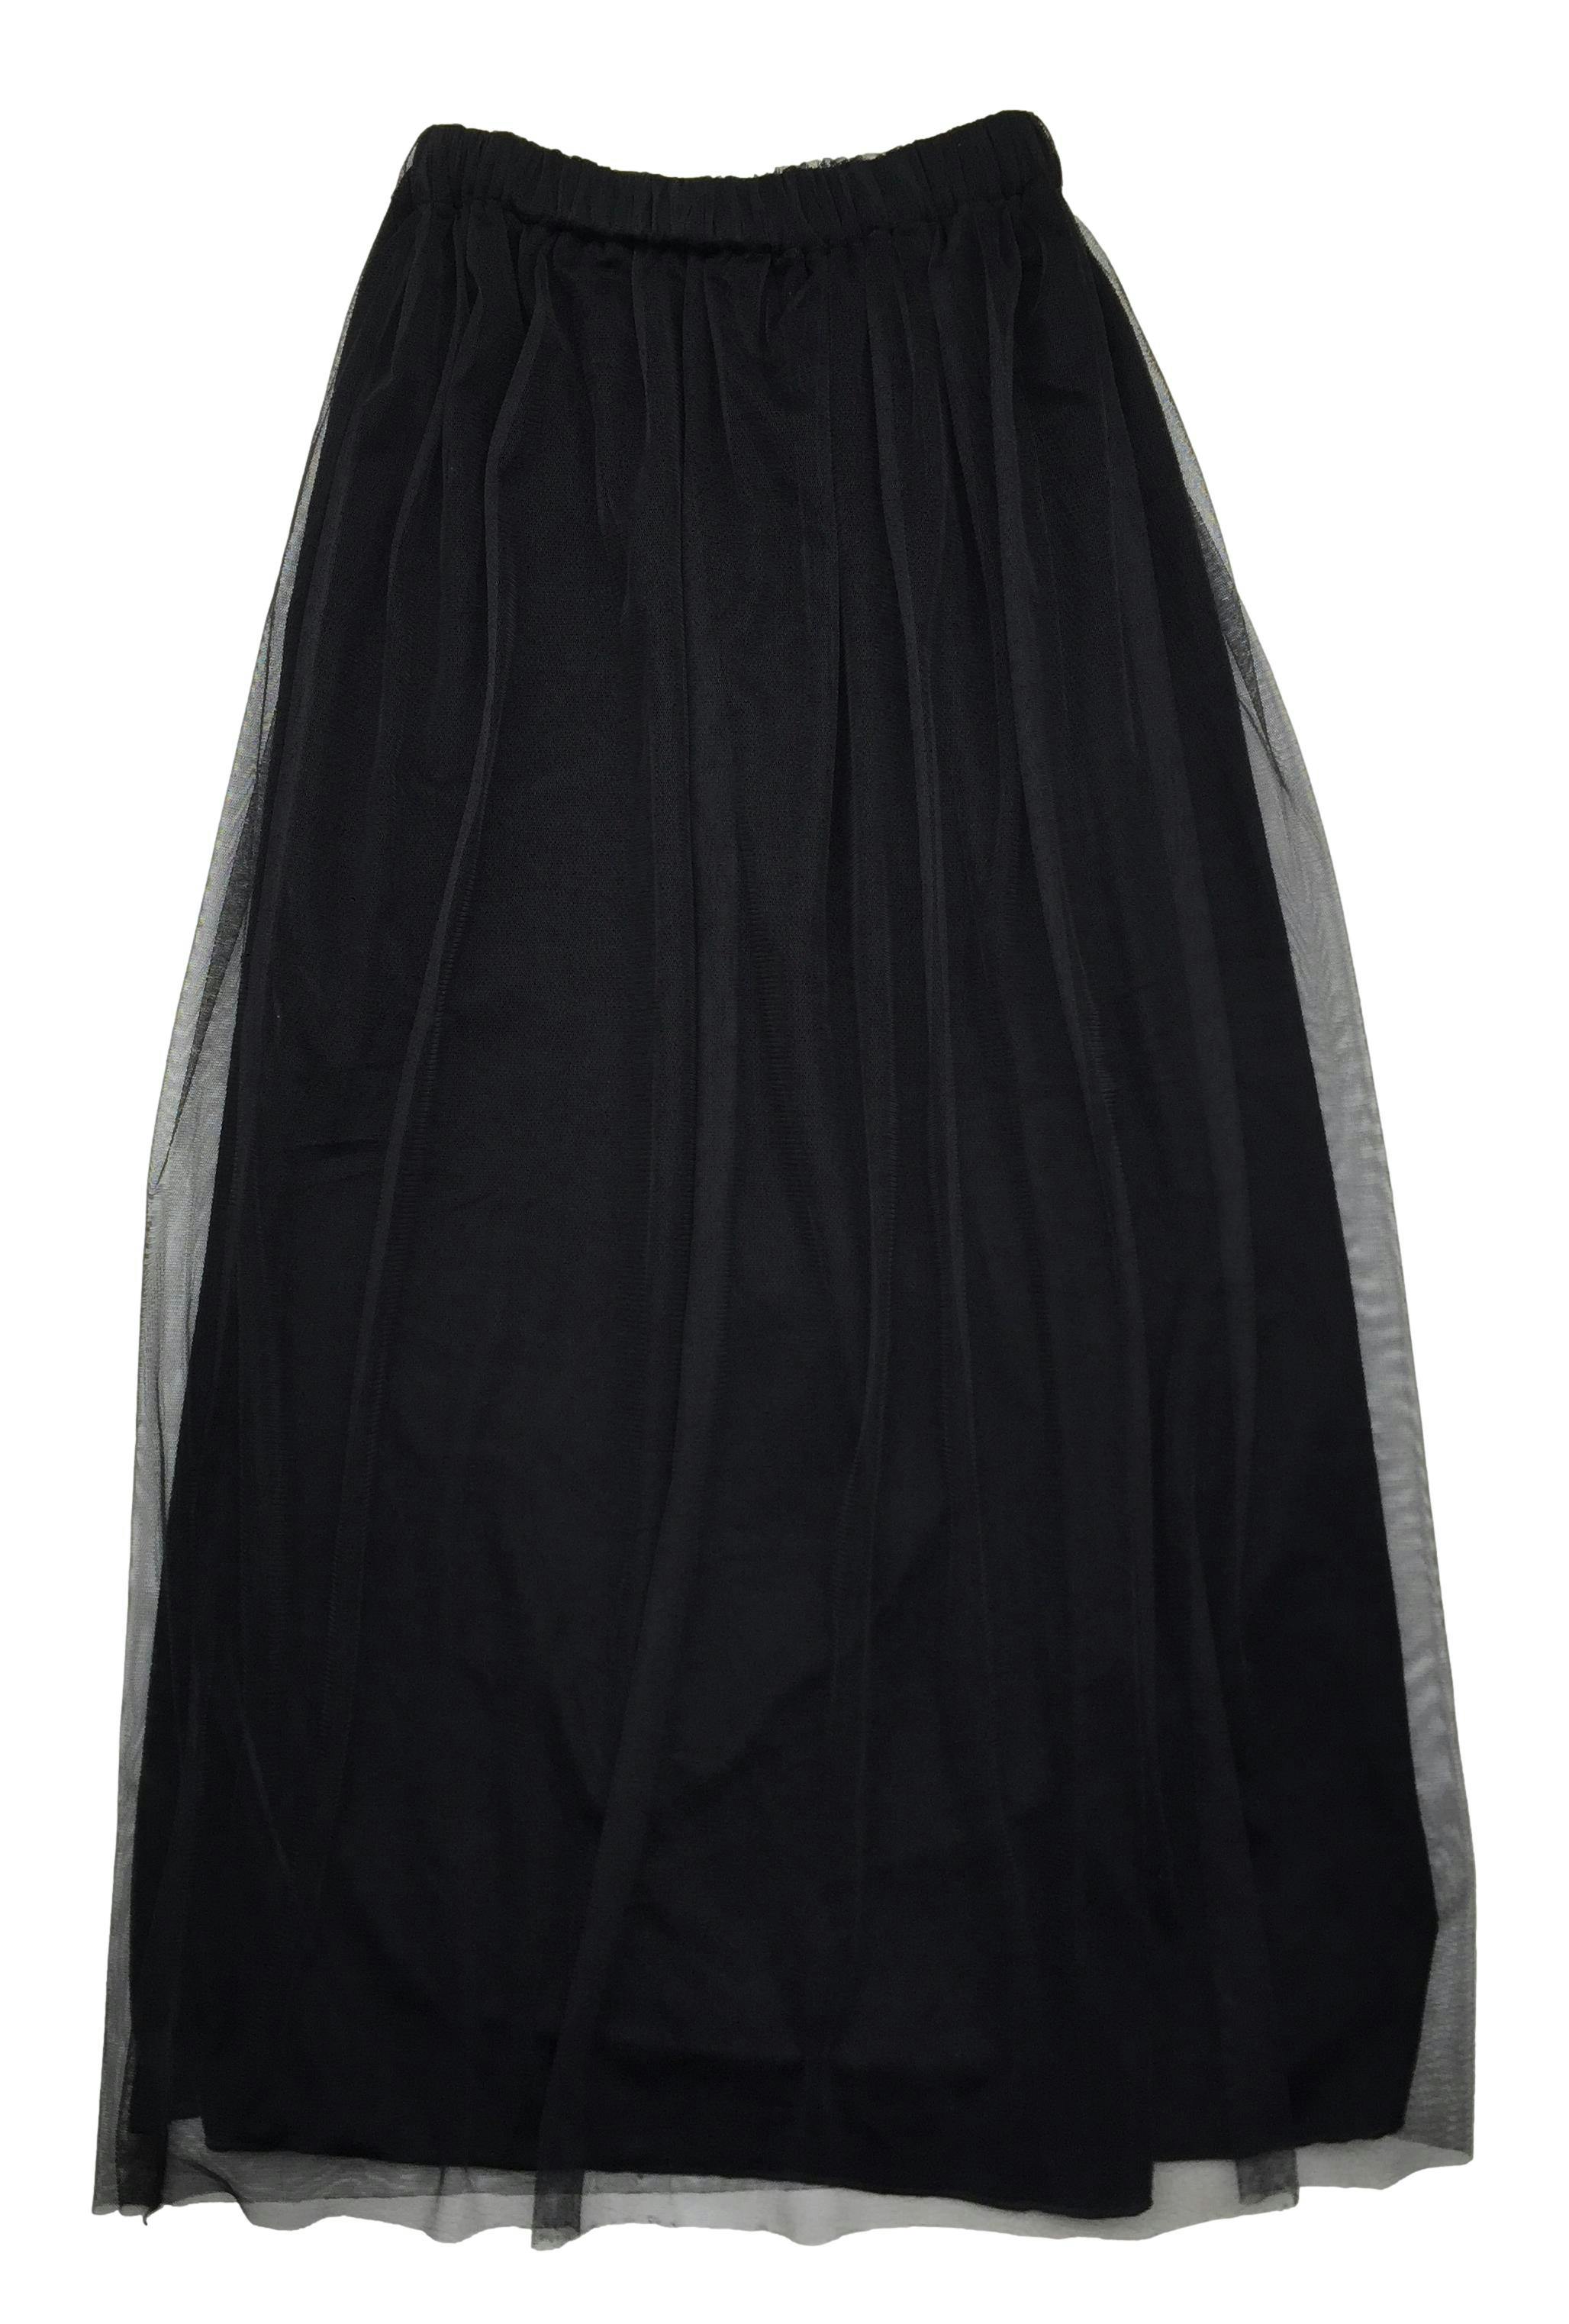 Falda negra de mesh con forro aterciopelado. Cintura 60 cm, Largo 80 cm.